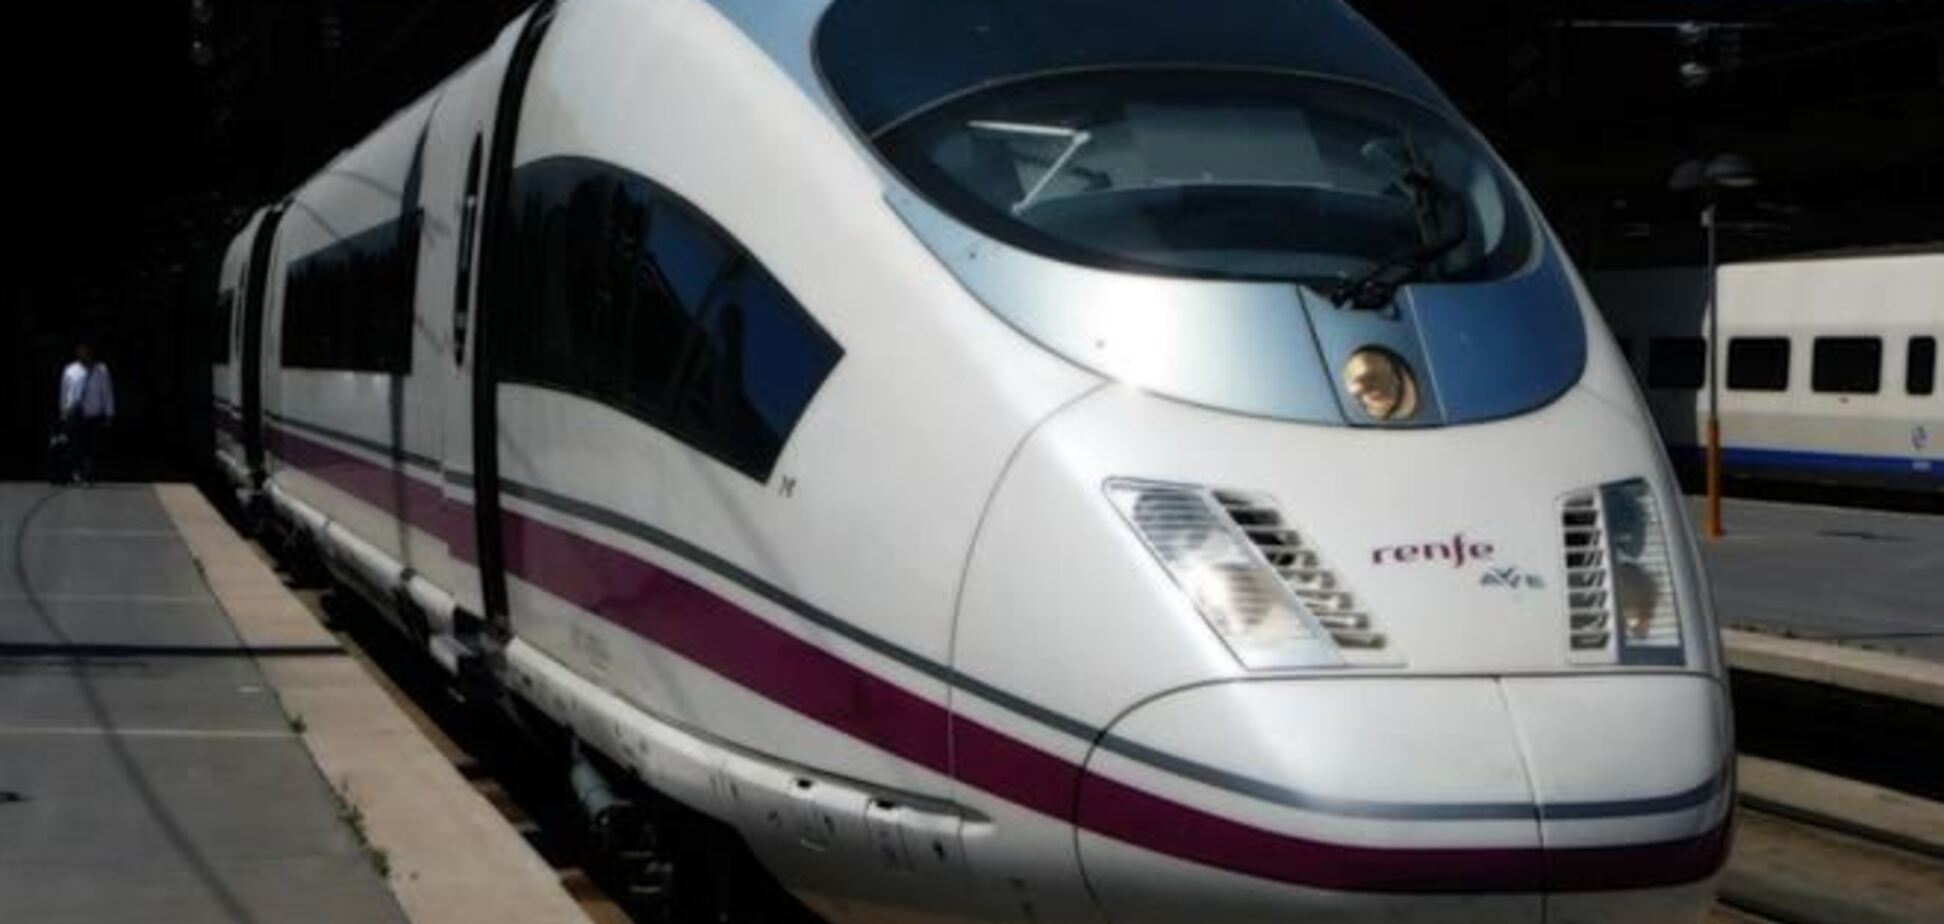 Поезда из Аликанте в Мадрид начали ходить со скоростью более 300 км/час 